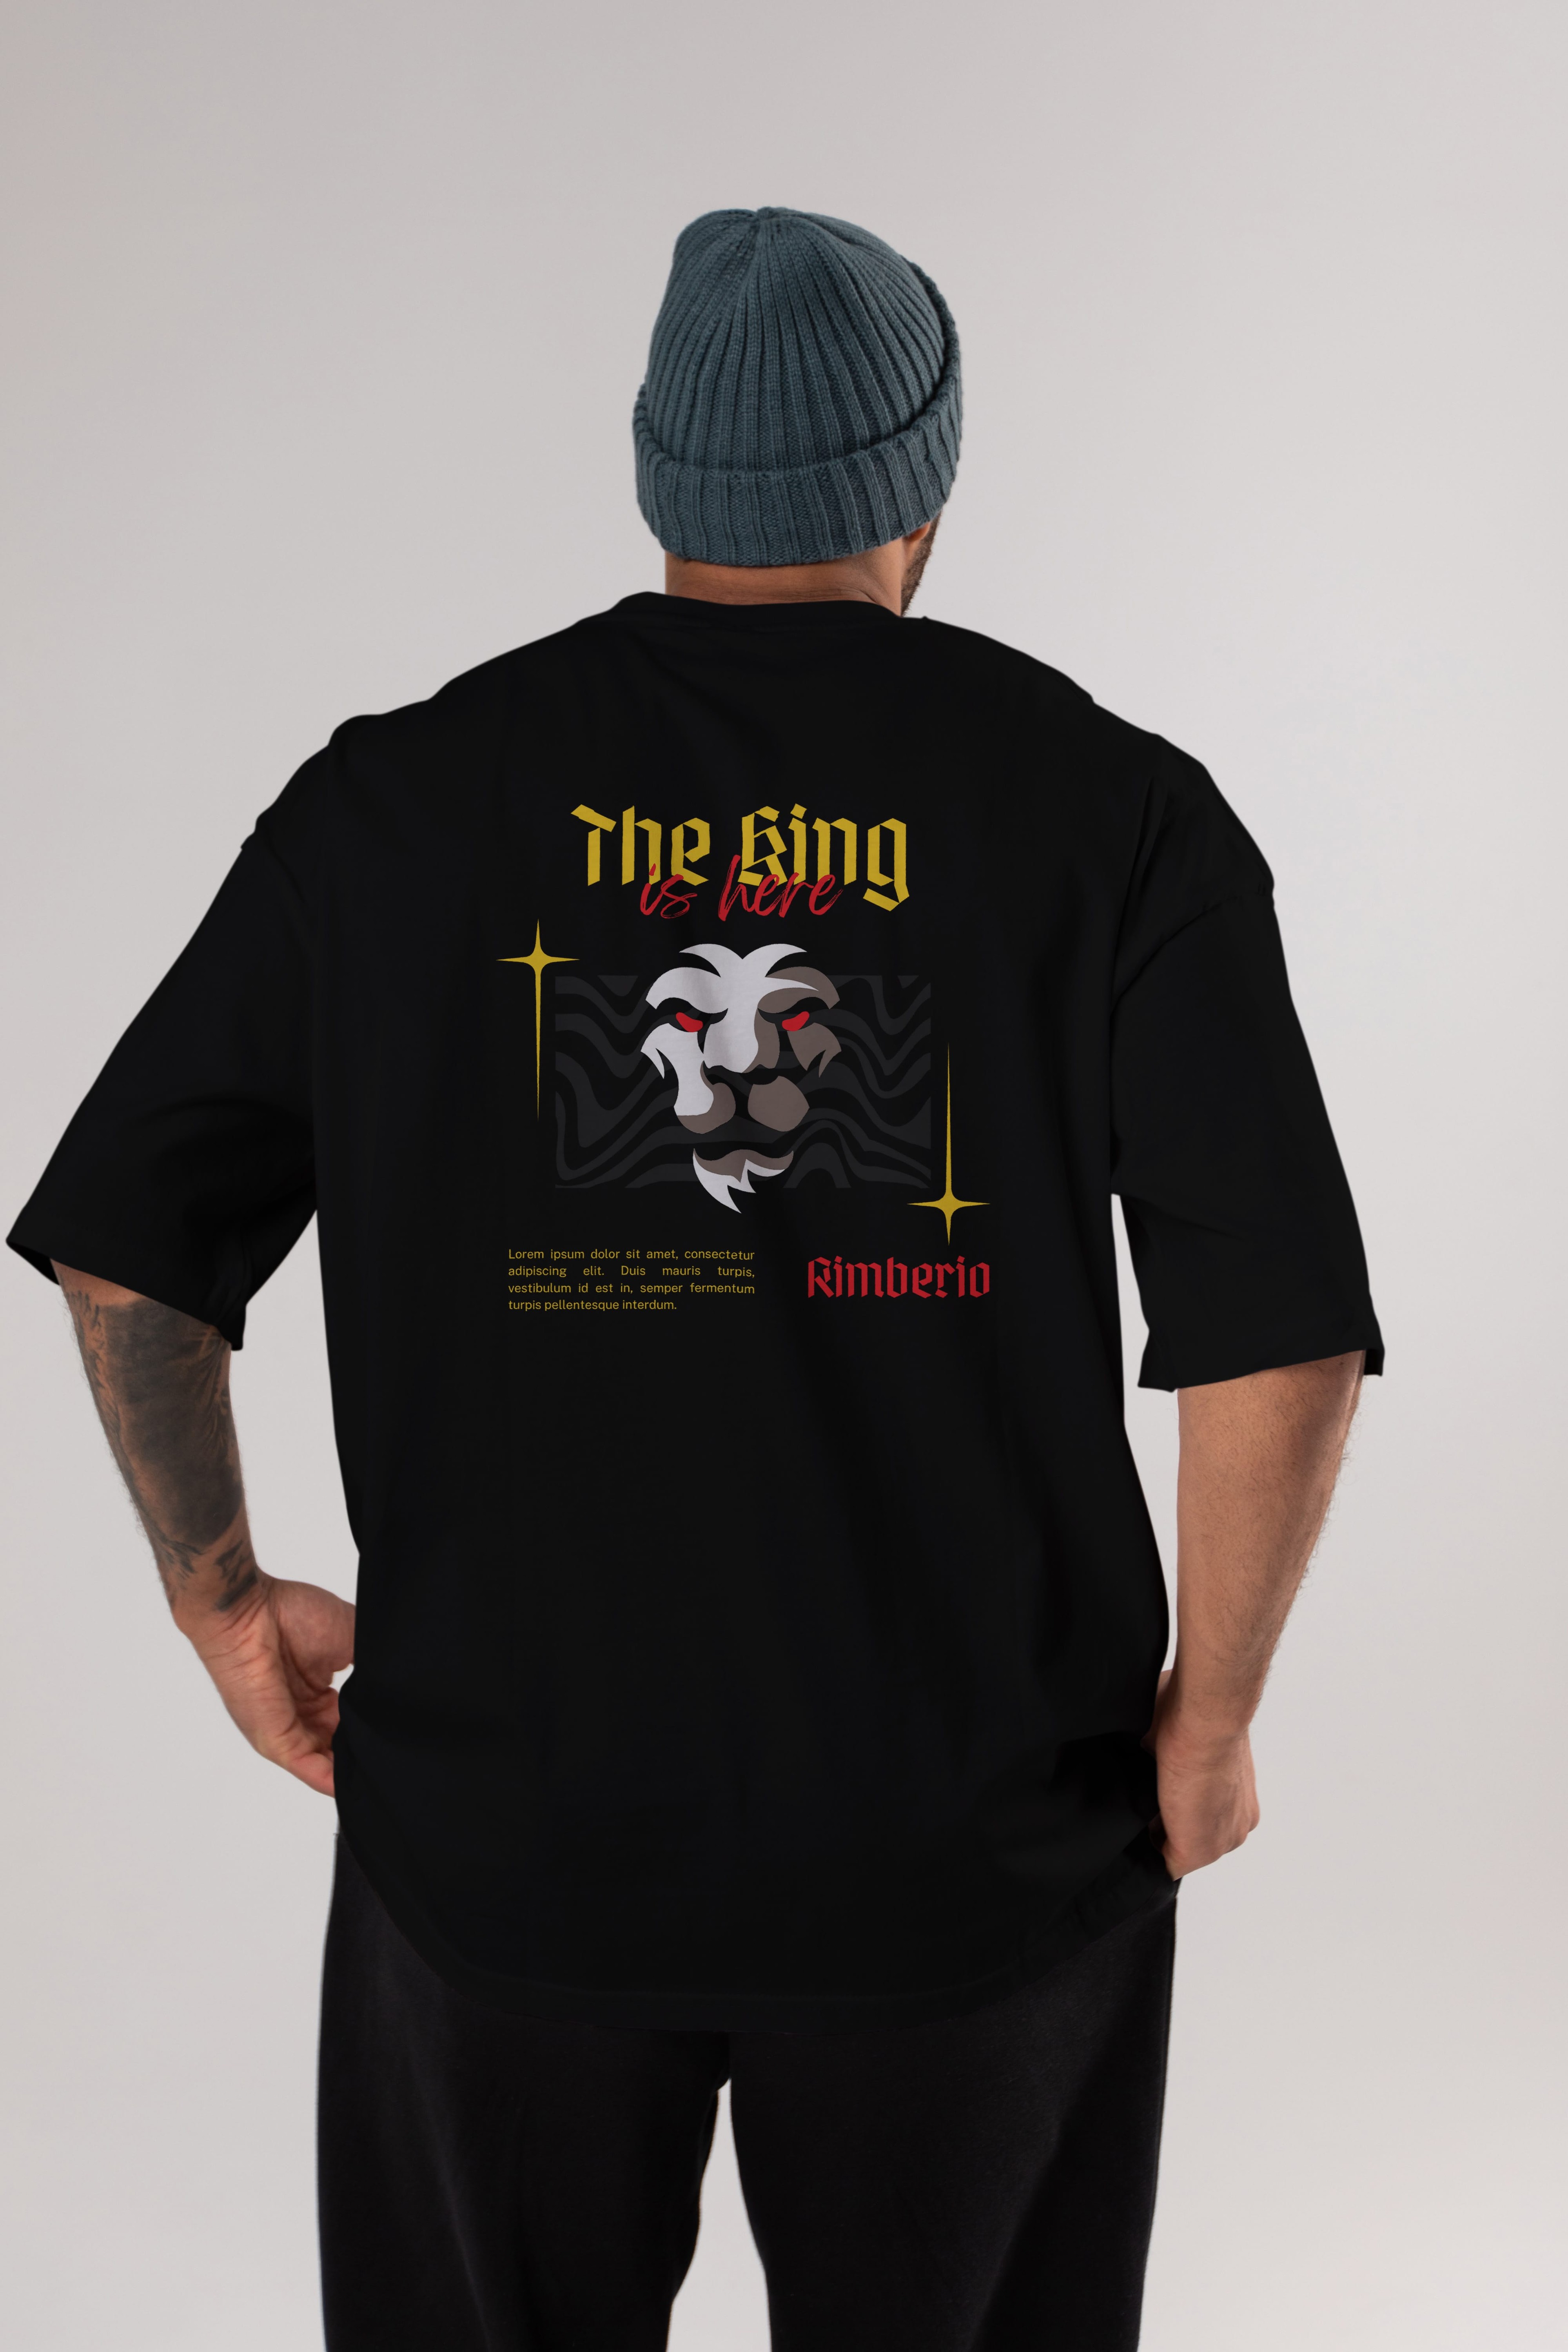 The King is Here Yazılı Arka Baskılı Oversize t-shirt Erkek Kadın Unisex